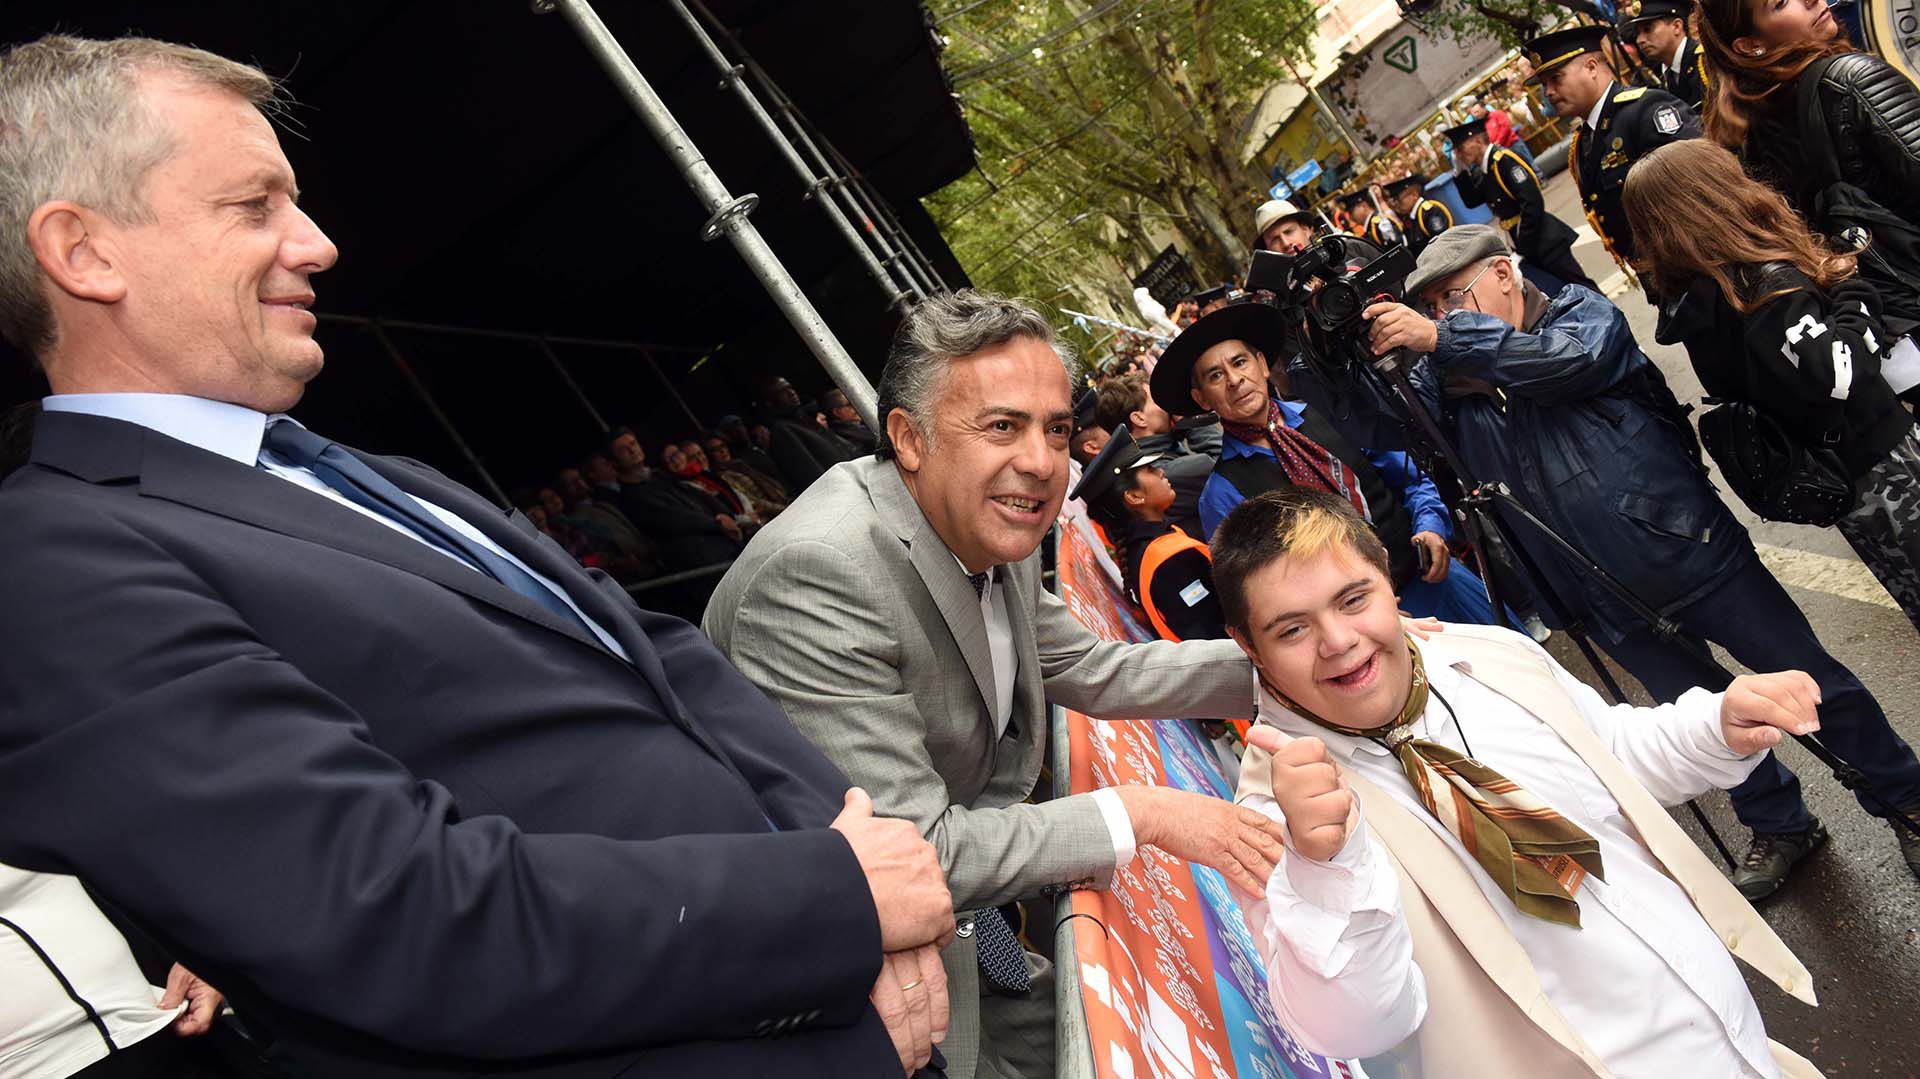 Monzó tiene un excelente vínculo con Alfredo Cornejo. Ambos se llevan muy mal con Macri. Aquí, en la Vendimia. Mendoza, 09-03-2019 